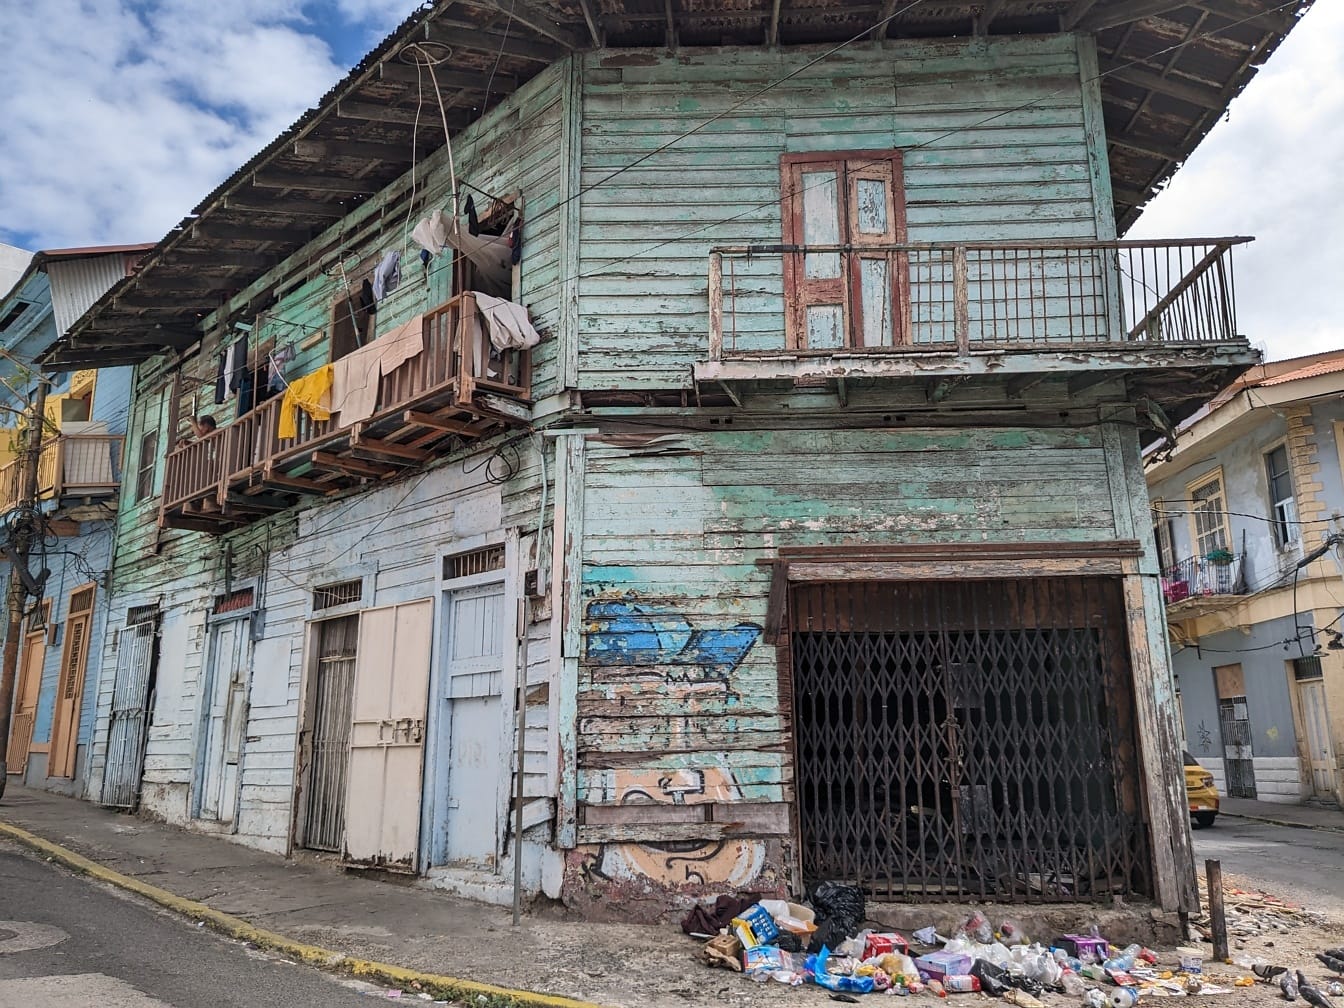 Rappeutunut talo, jonka edessä on roskia kadunkulmassa kaupungin köyhässä osassa